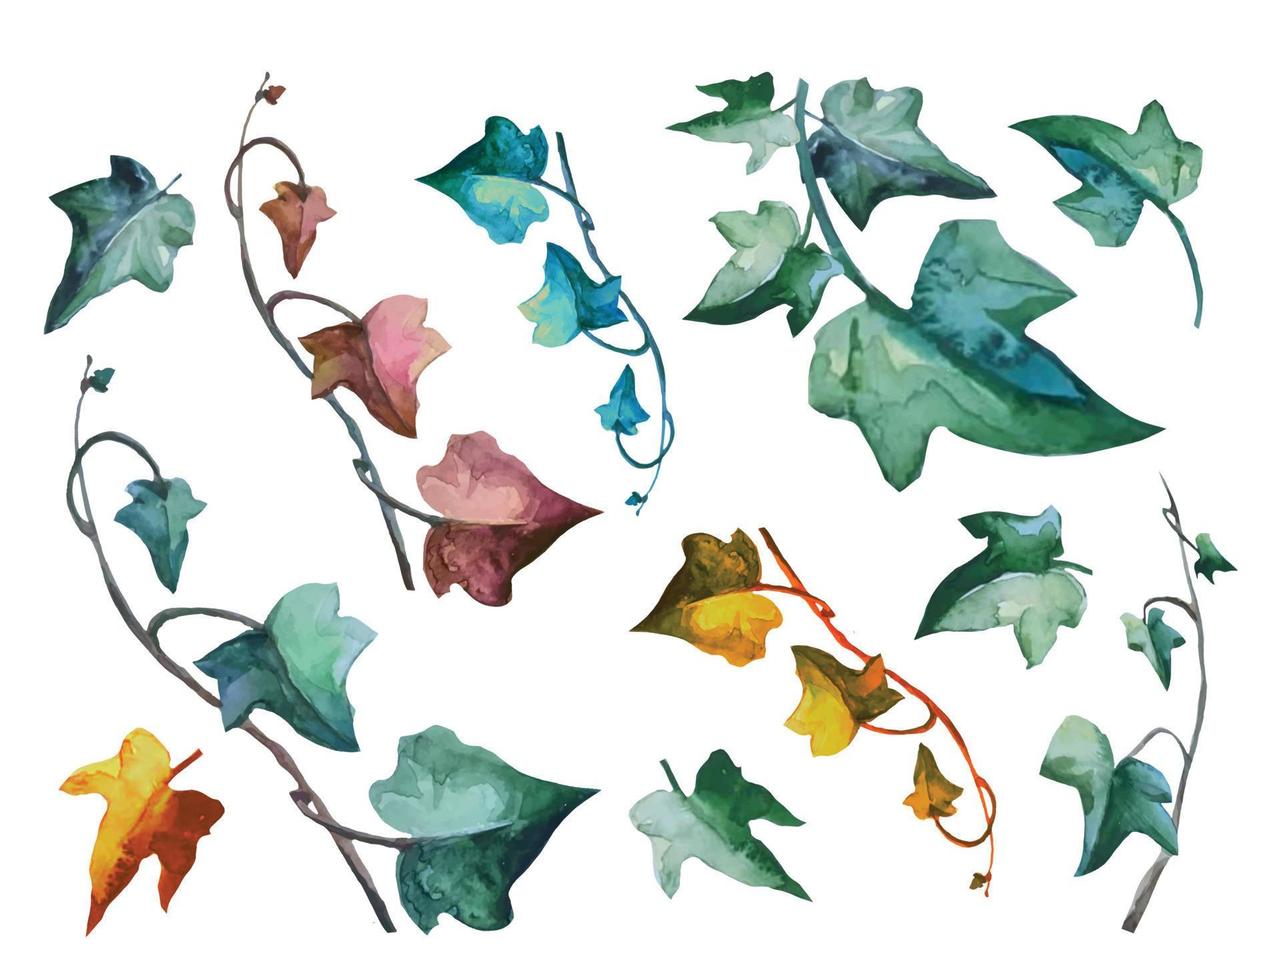 impostare la pianta di edera con rami rampicanti foglie verdi e foglie morte, vettore di illustrazione botanica della vite